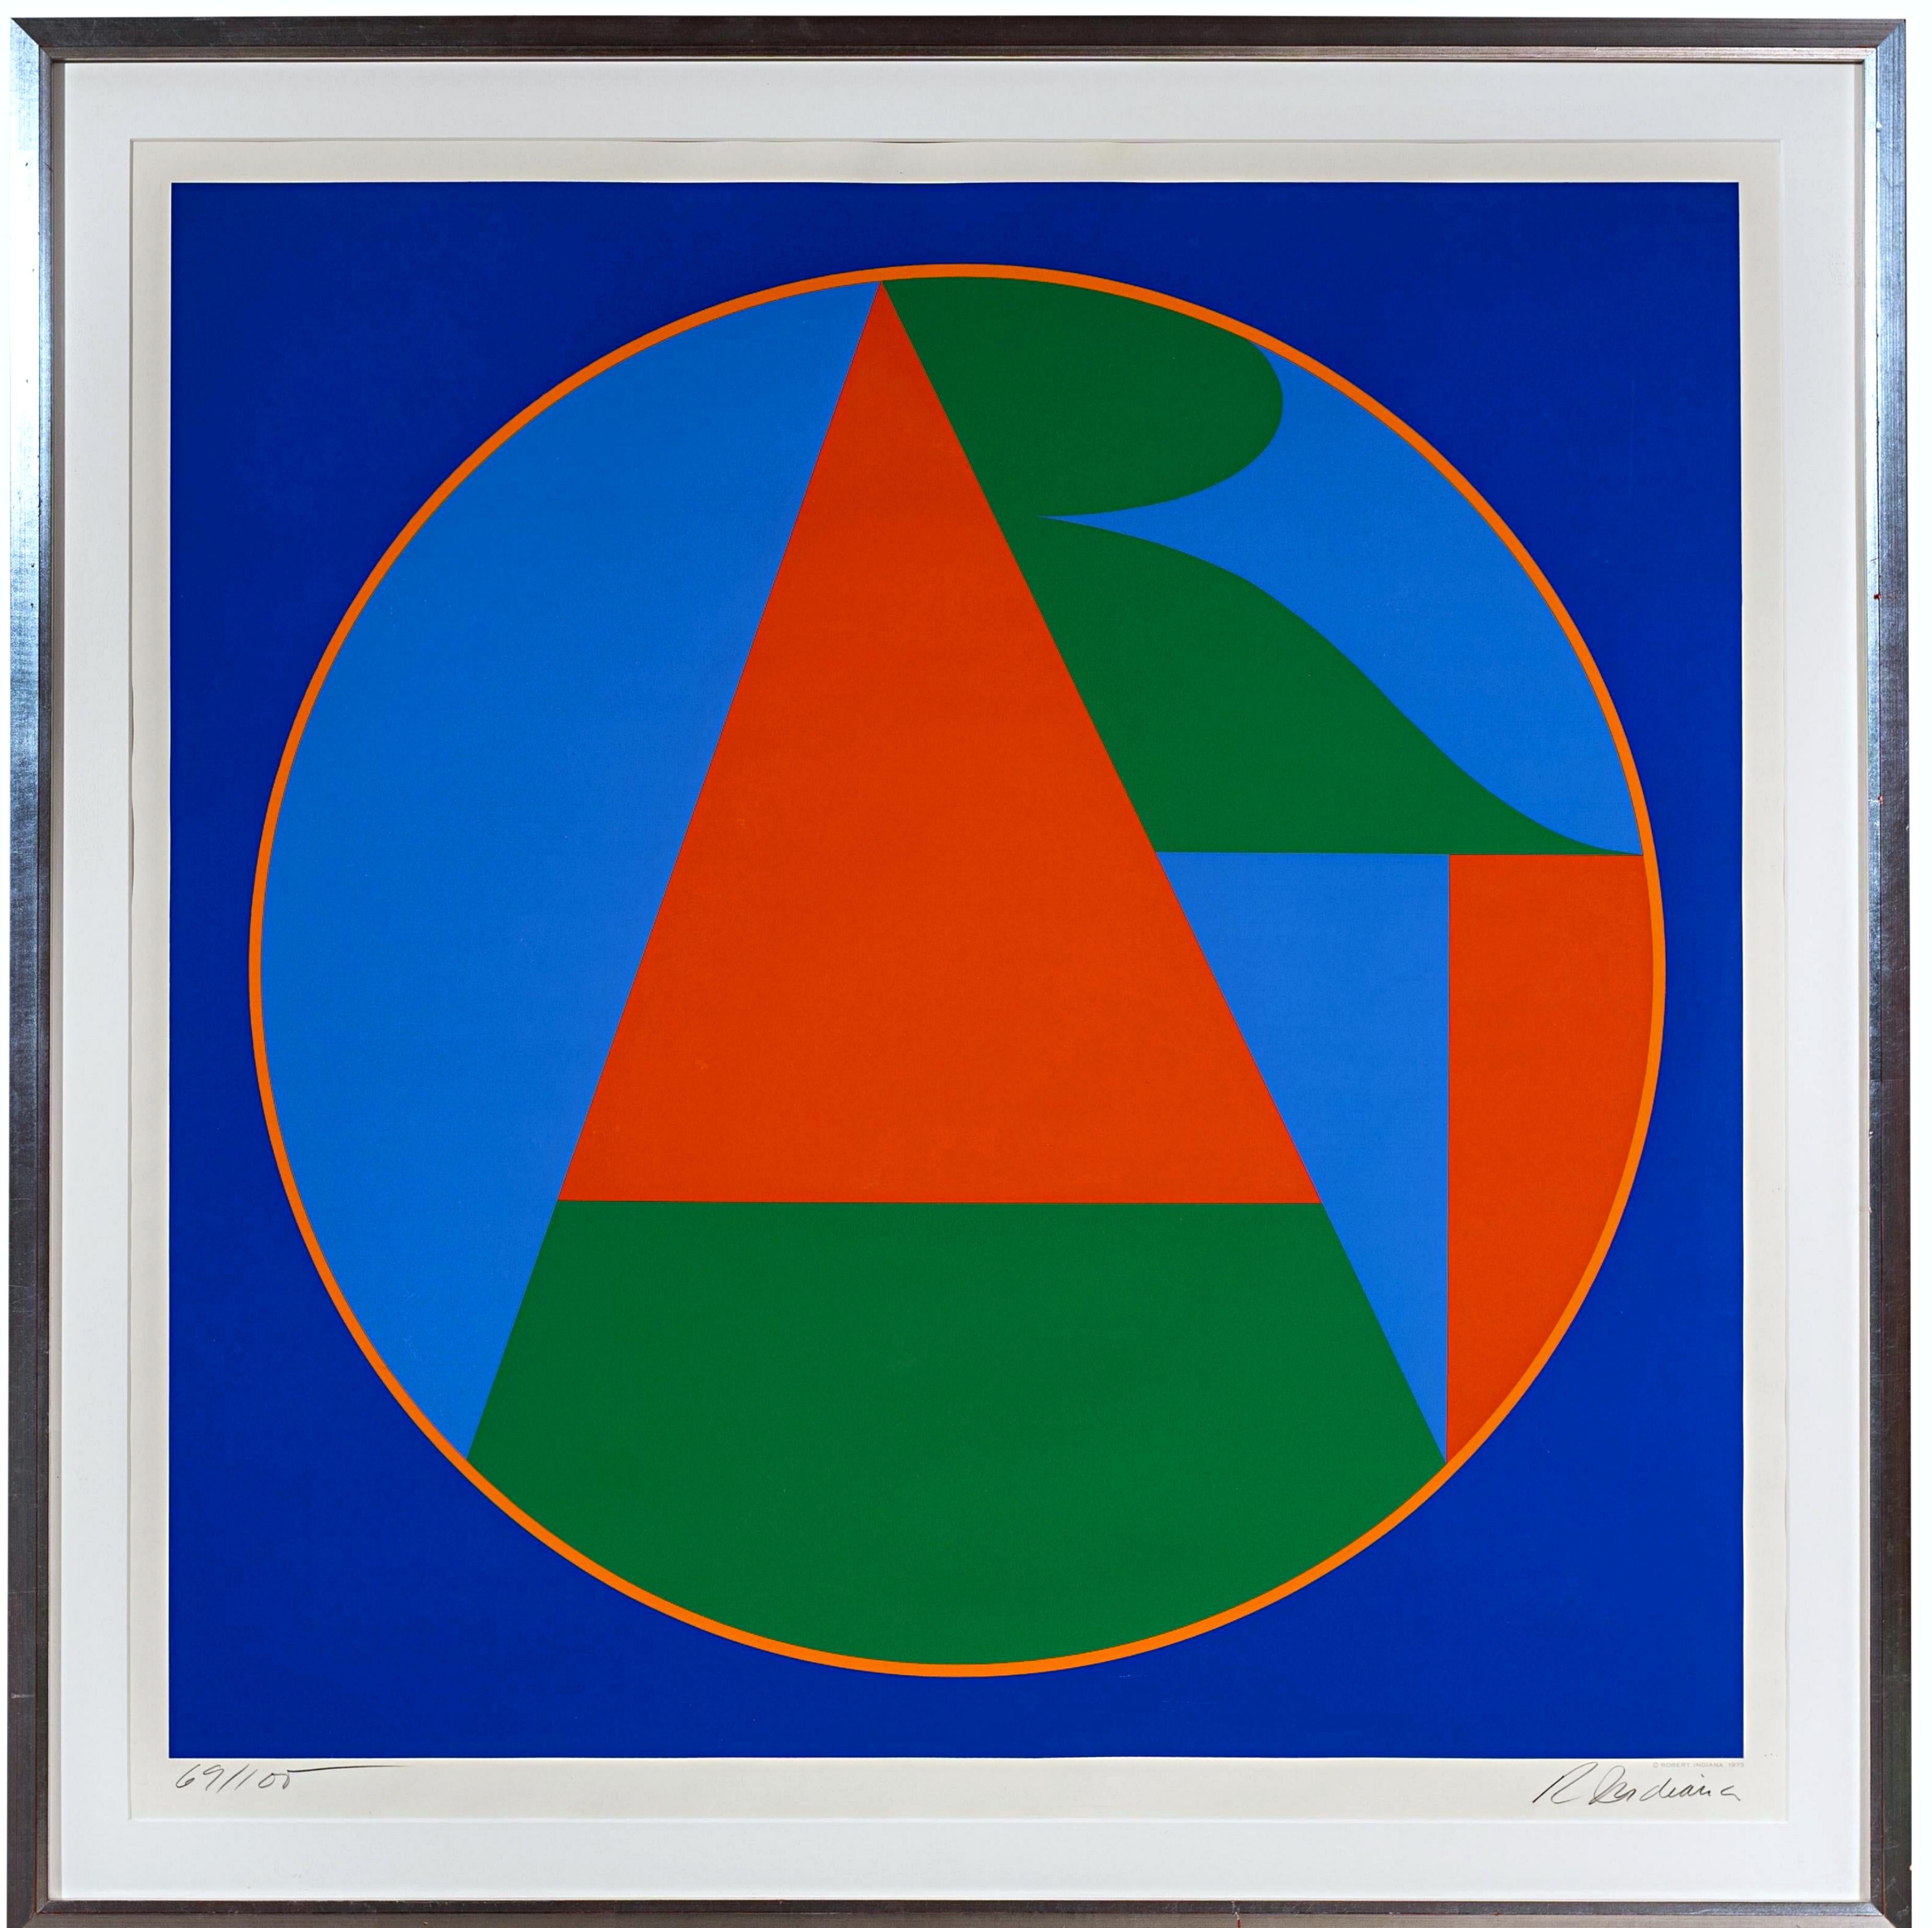 ART (Sheehan, 80) ikonische geometrische Abstraktion der 1970er Jahre lt ed s/n für Colby College